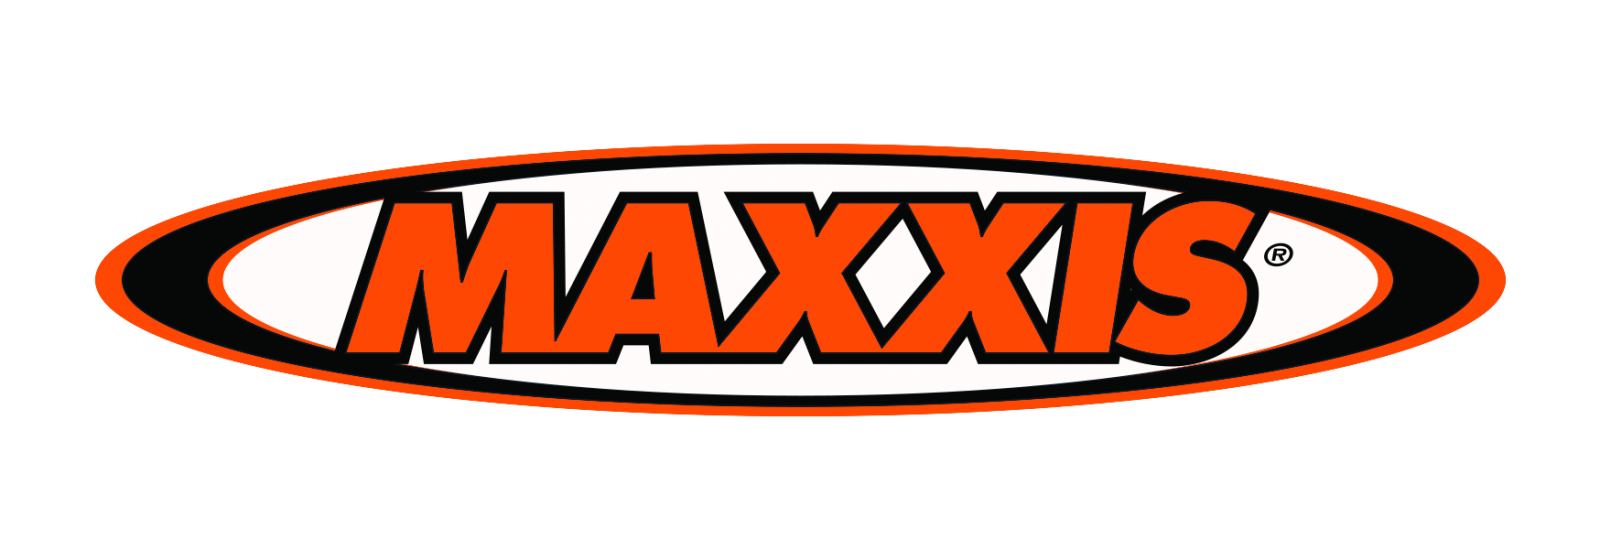 Шины Maxxis - официальный дилер в Молдове